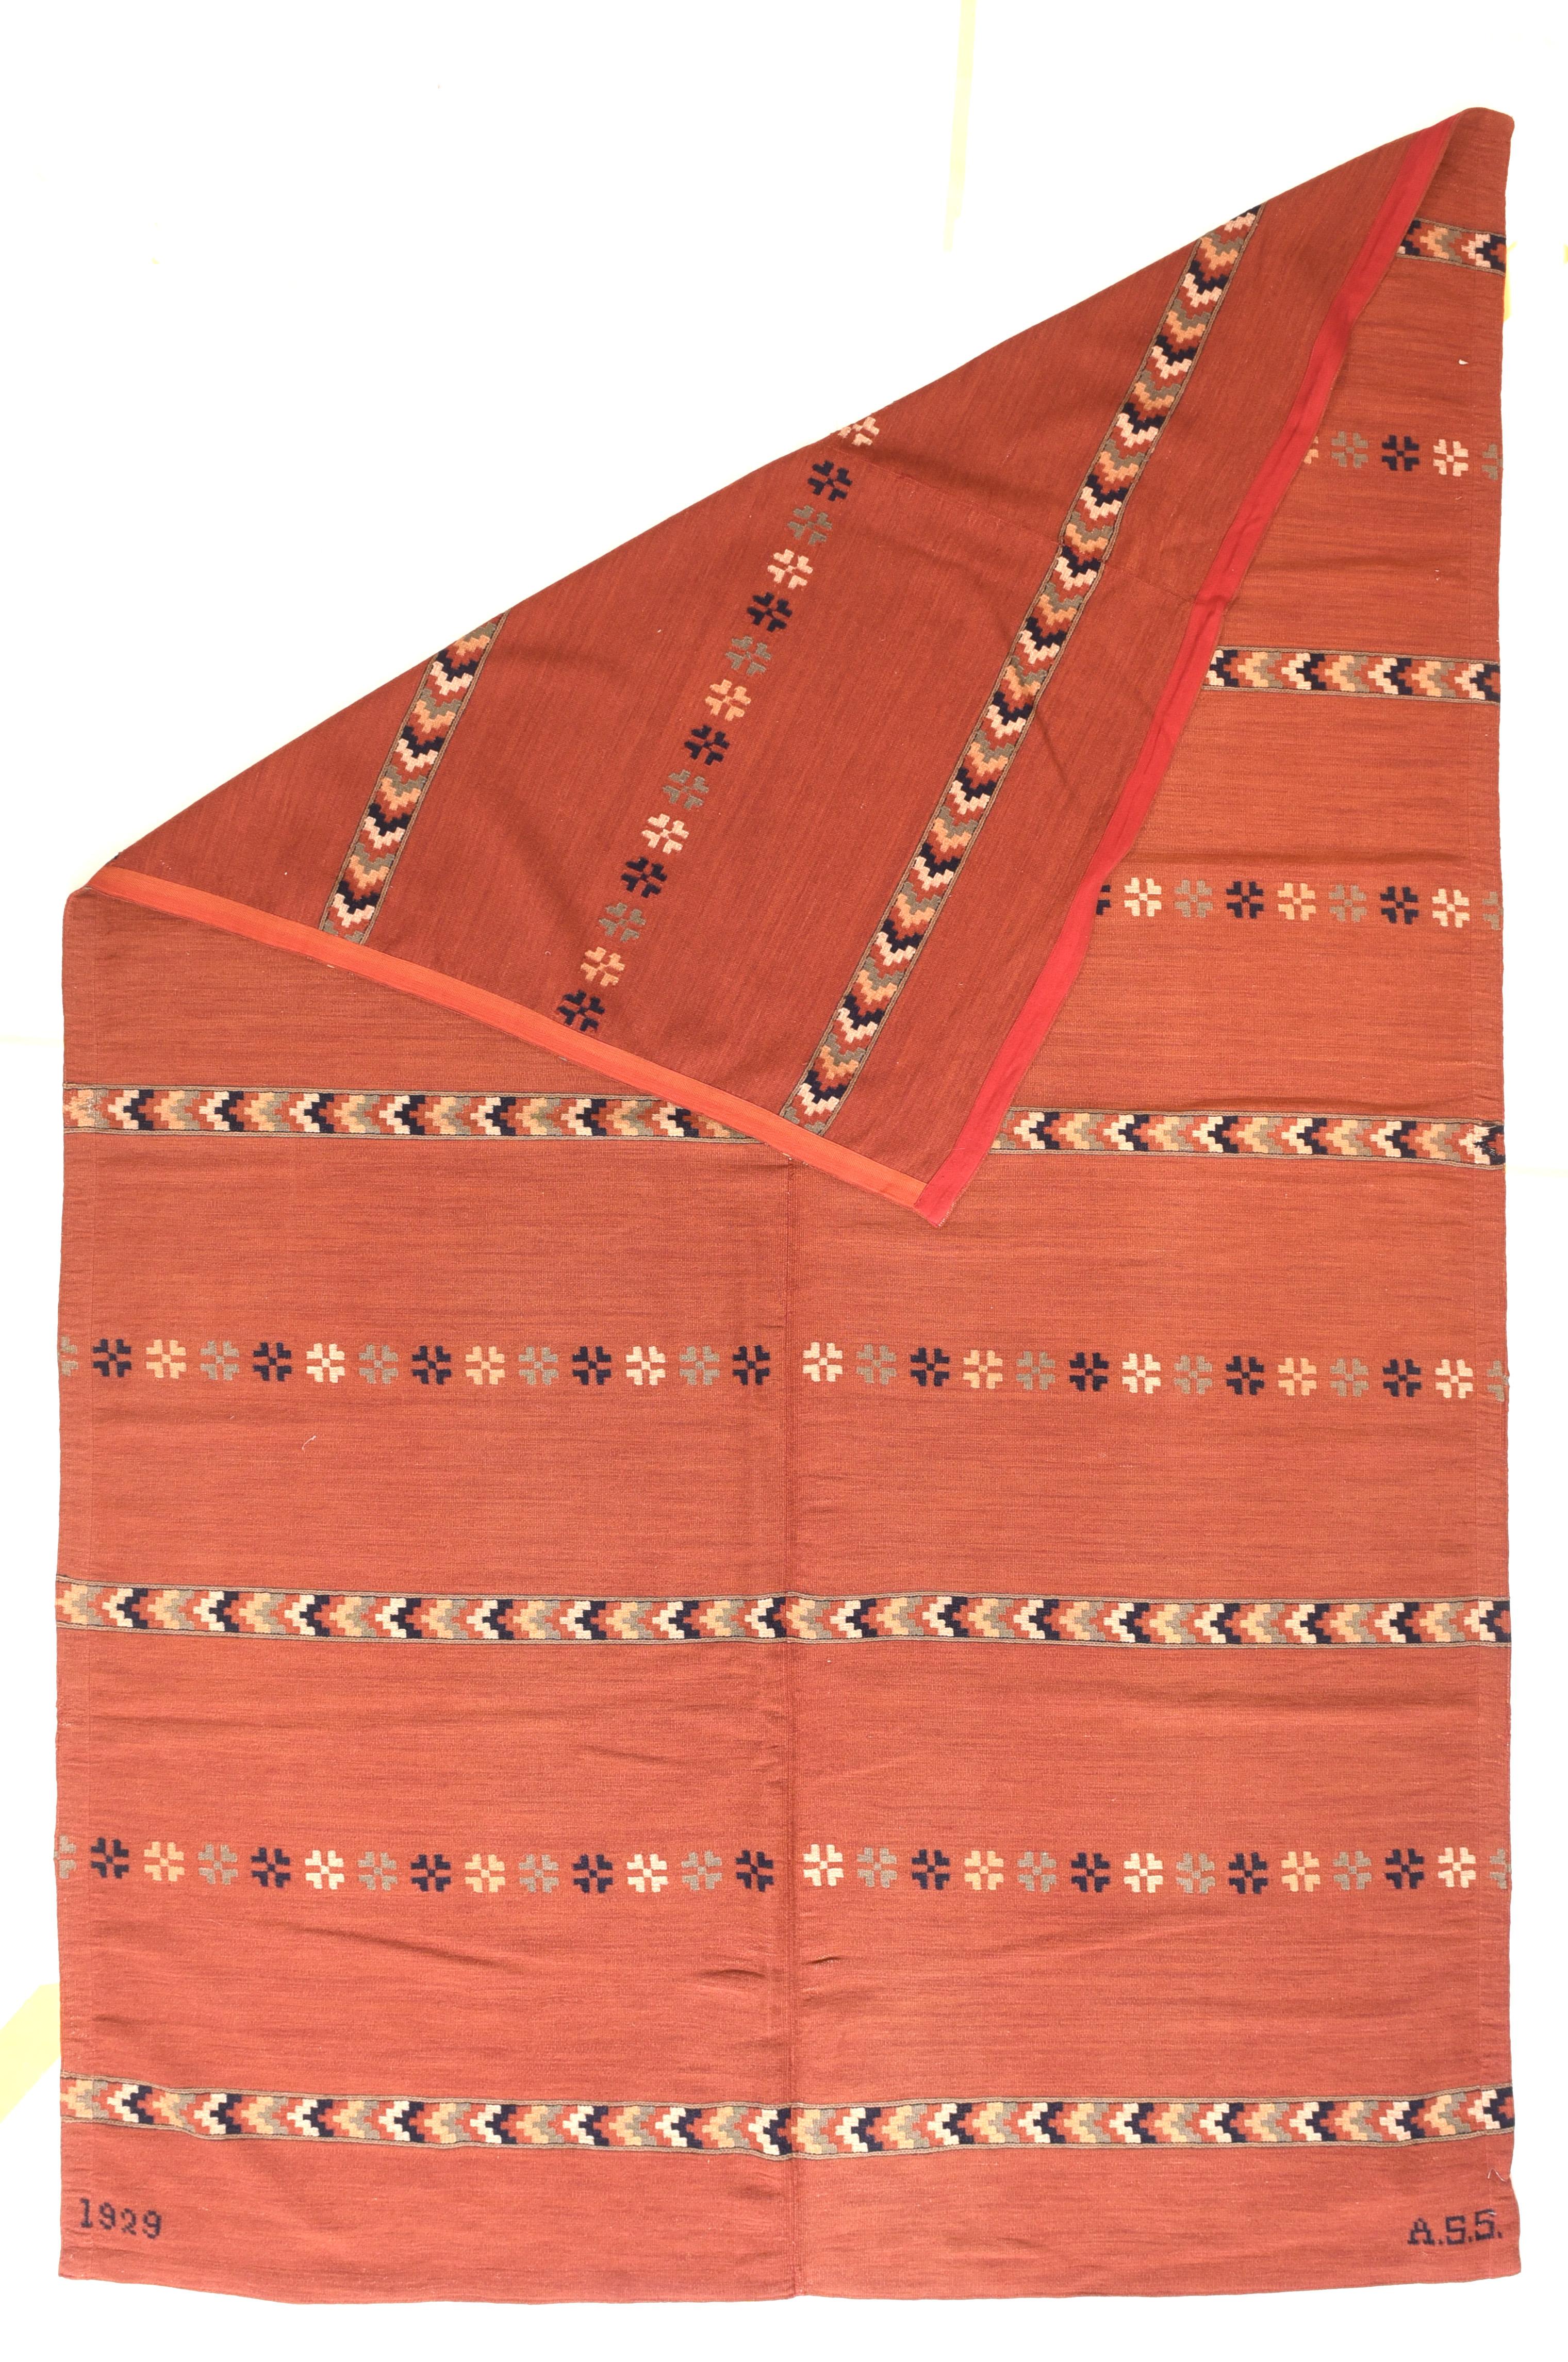 Vintage Swedish Kilim Rug 5'4'' x 6'. Eine skandinavische flachgewebte Decke mit Bändern aus extra gewebten Mustern auf einem lachsfarbenen Grund. Der bordürenlose, zweigeteilte Grund aus Wolle ist mit neun extra gewebten Bändern gemustert, die sich